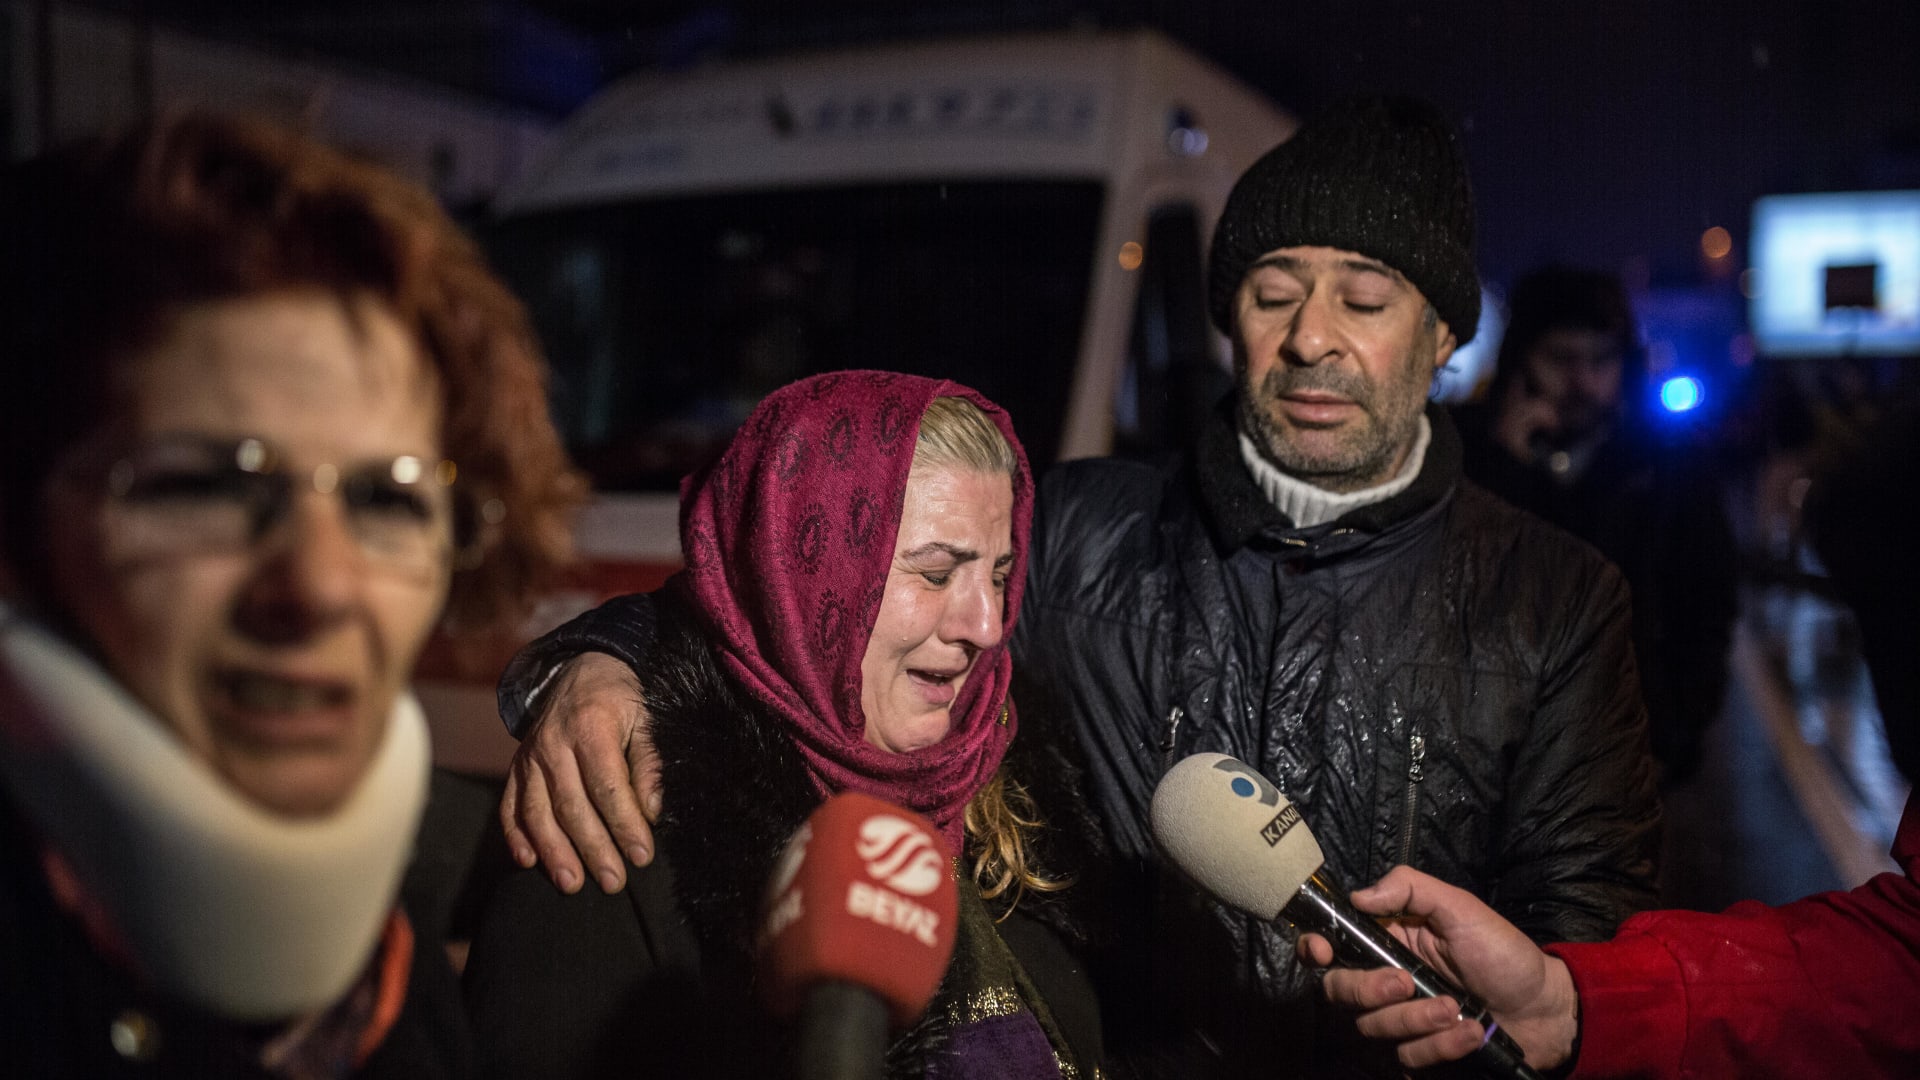 شاهد اللحظات الأولى بعد هجوم إطلاق النار في ملهى ليلي بتركيا خلال احتفالات رأس السنة